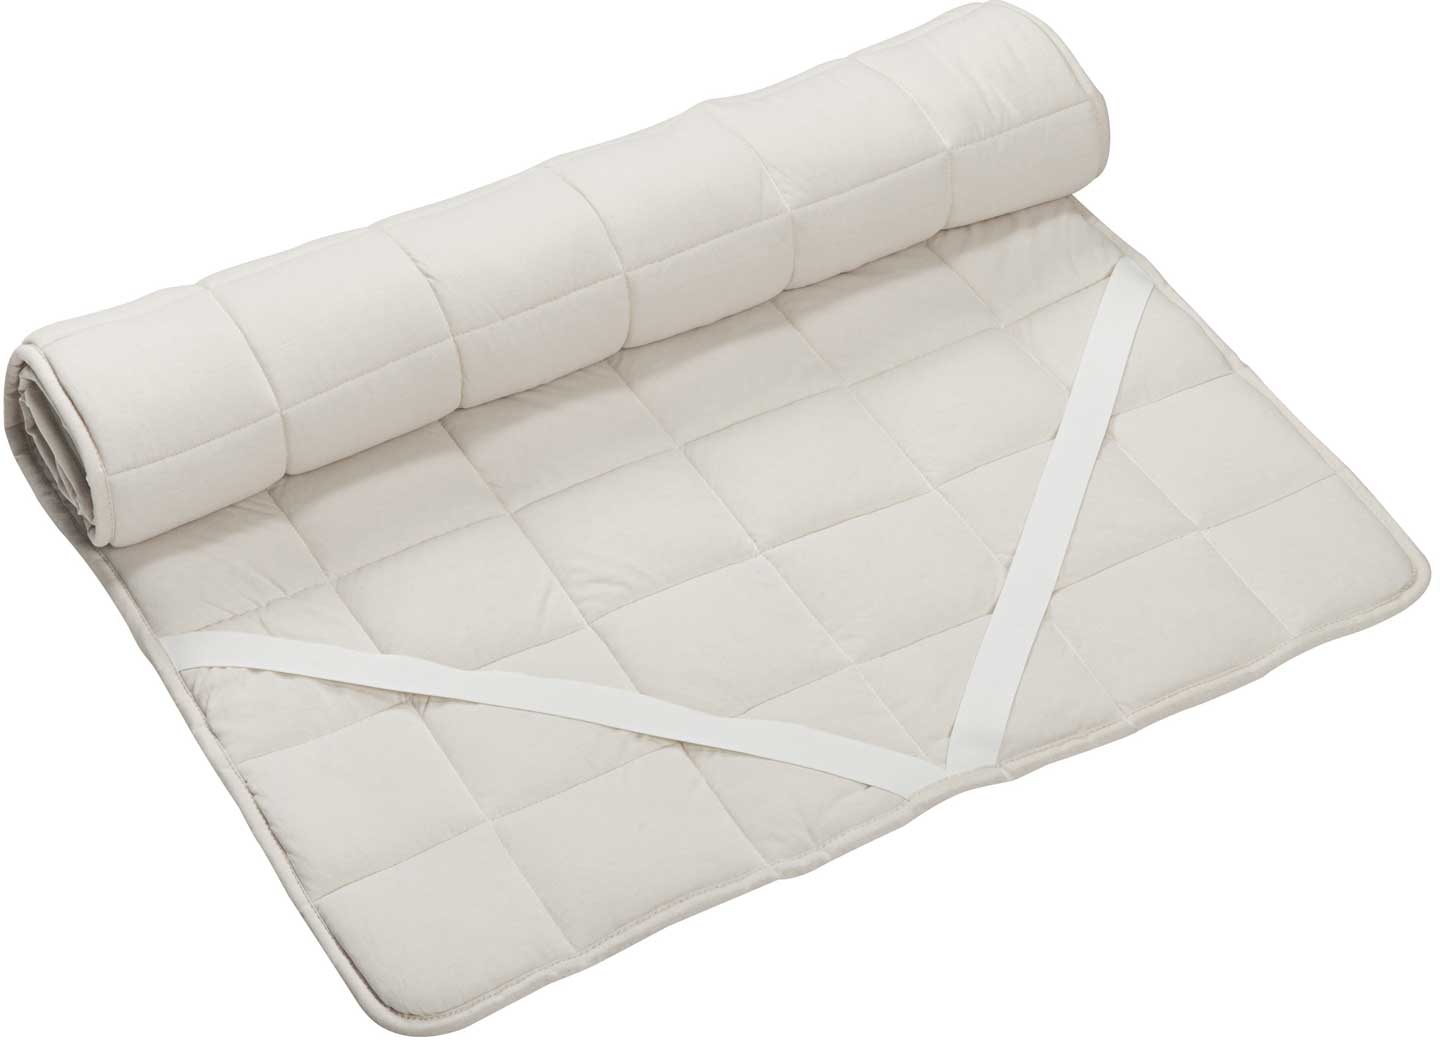 Copri-materasso per più comfort